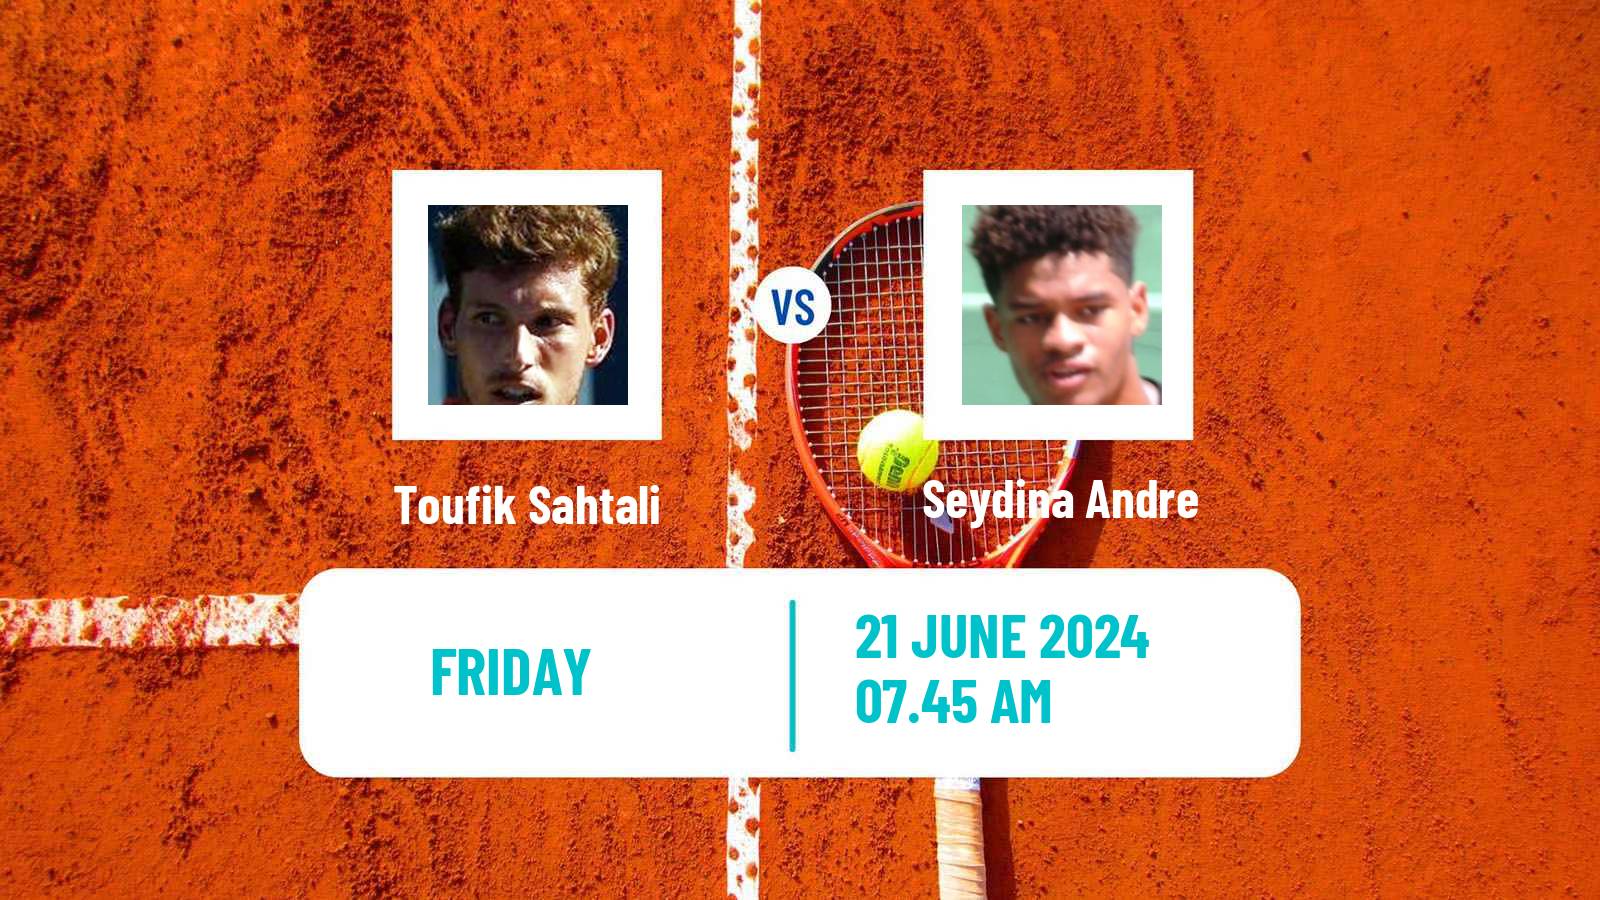 Tennis Davis Cup Group IV Toufik Sahtali - Seydina Andre